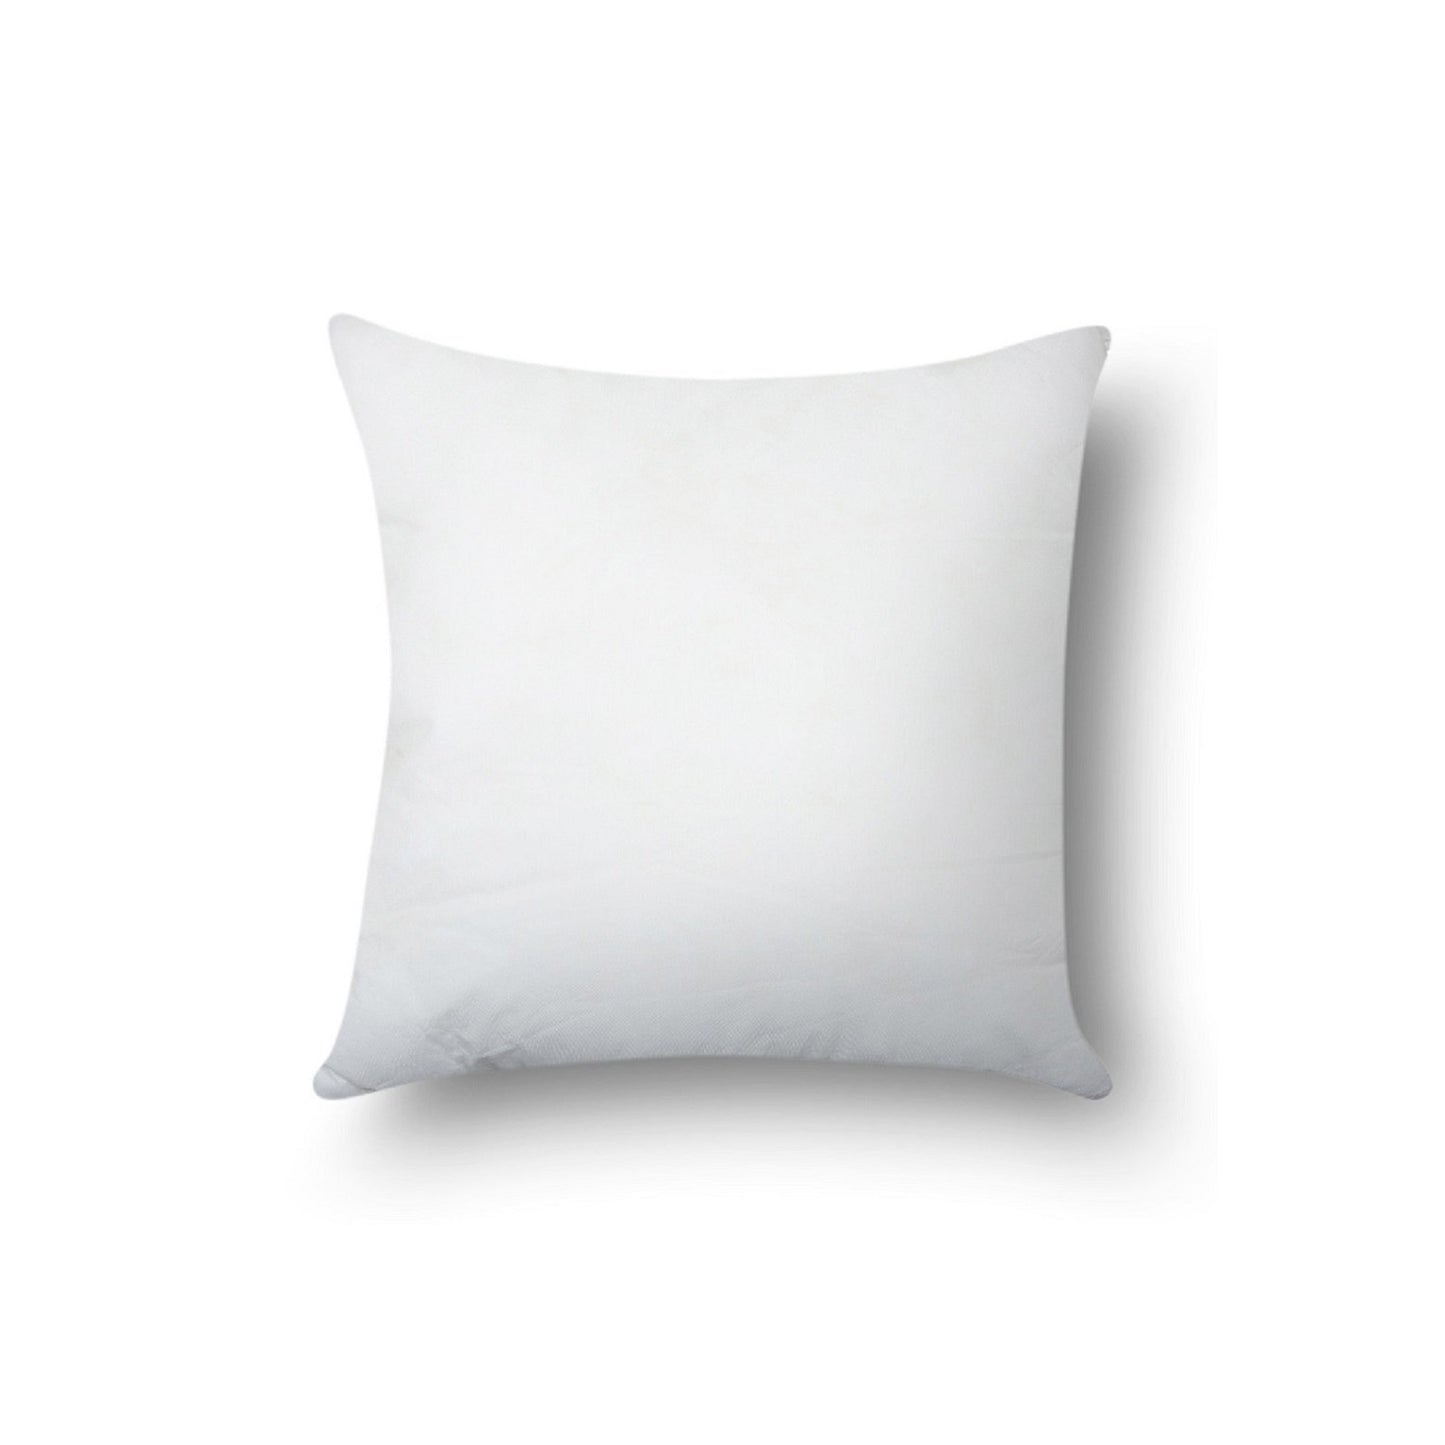 SWHF Cushion Filler 41 X 41 Cm (16 x 16 Inch) - SWHF